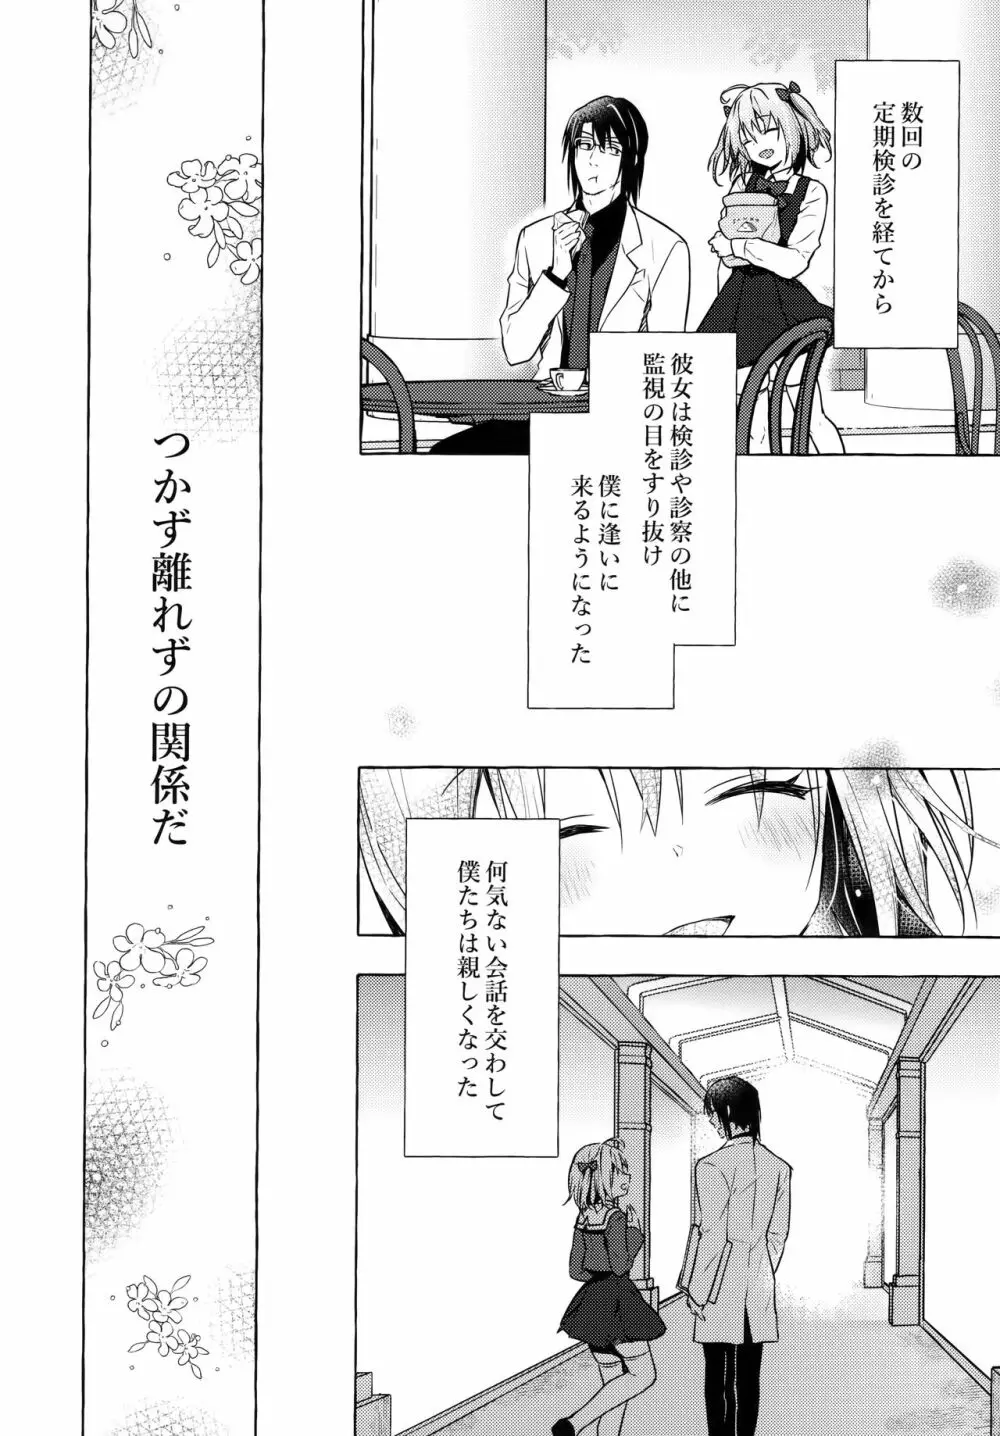 ニャンコロジ10 -宇佐美さんと秘密の研究生活- 9ページ